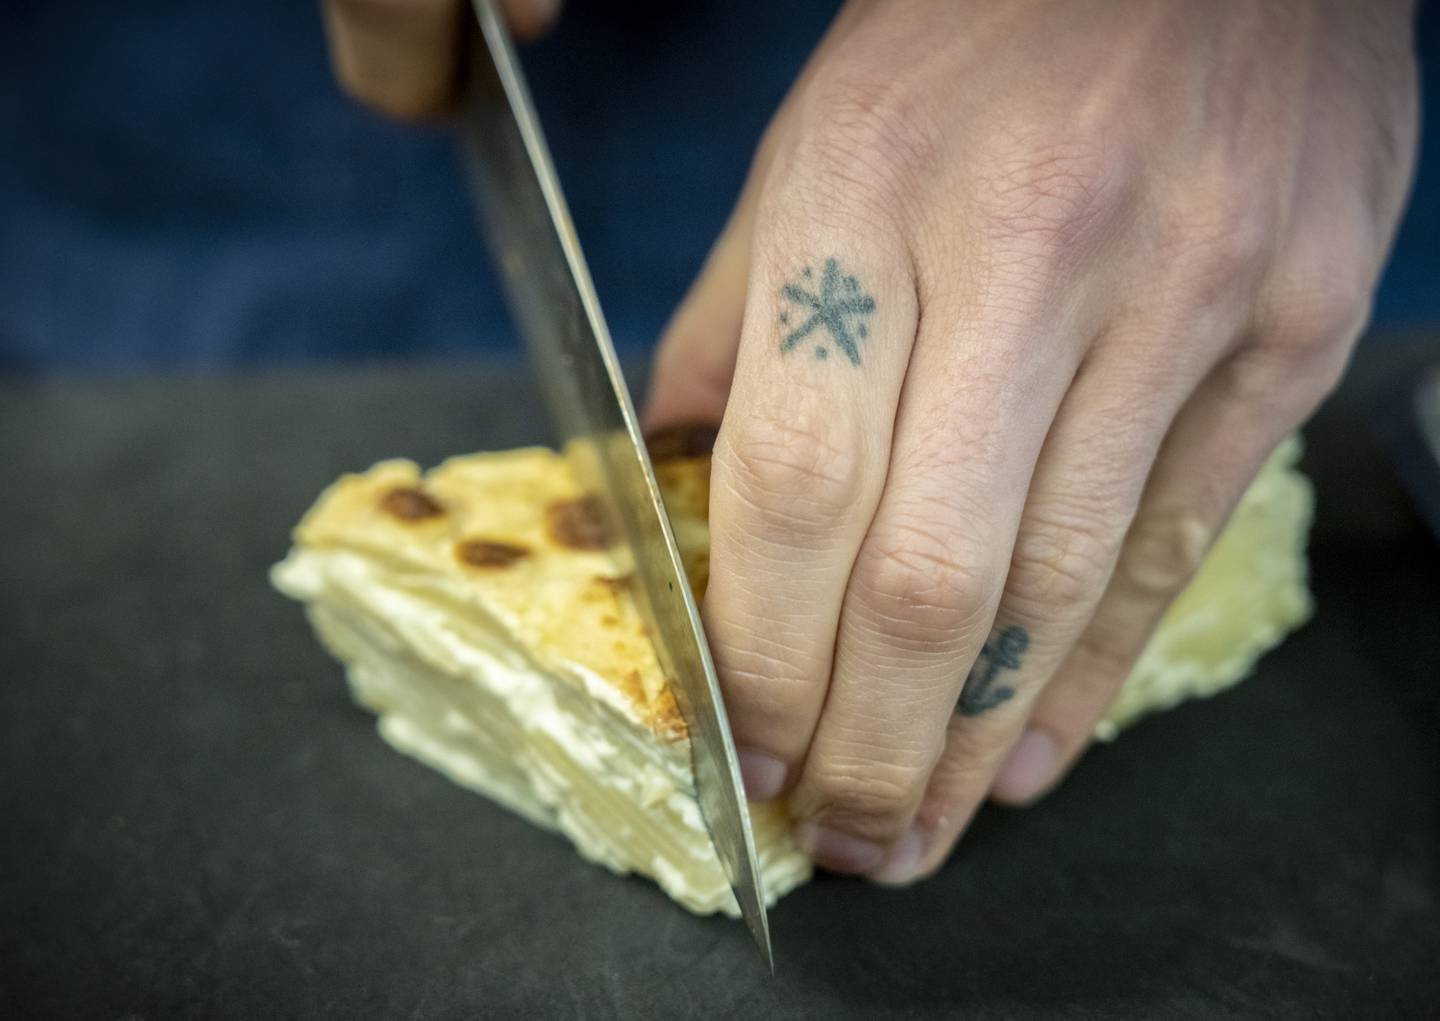 ANRETNING: Skjær opp potetkaken i passende stykker før oppvarming og servering. Foto: Ole Berg-Rusten / NTB